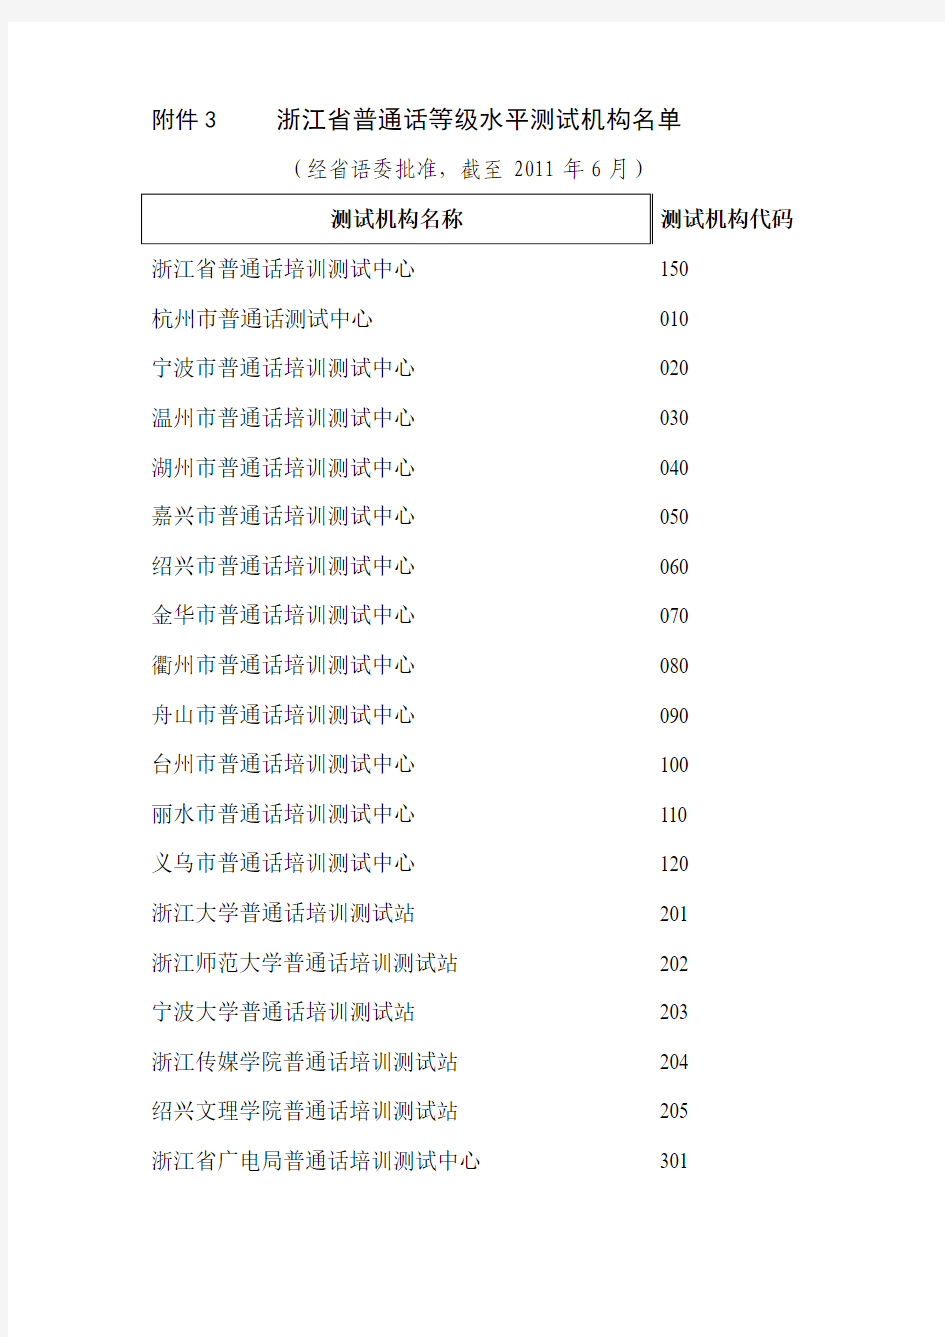 浙江省普通话等级水平测试机构名单